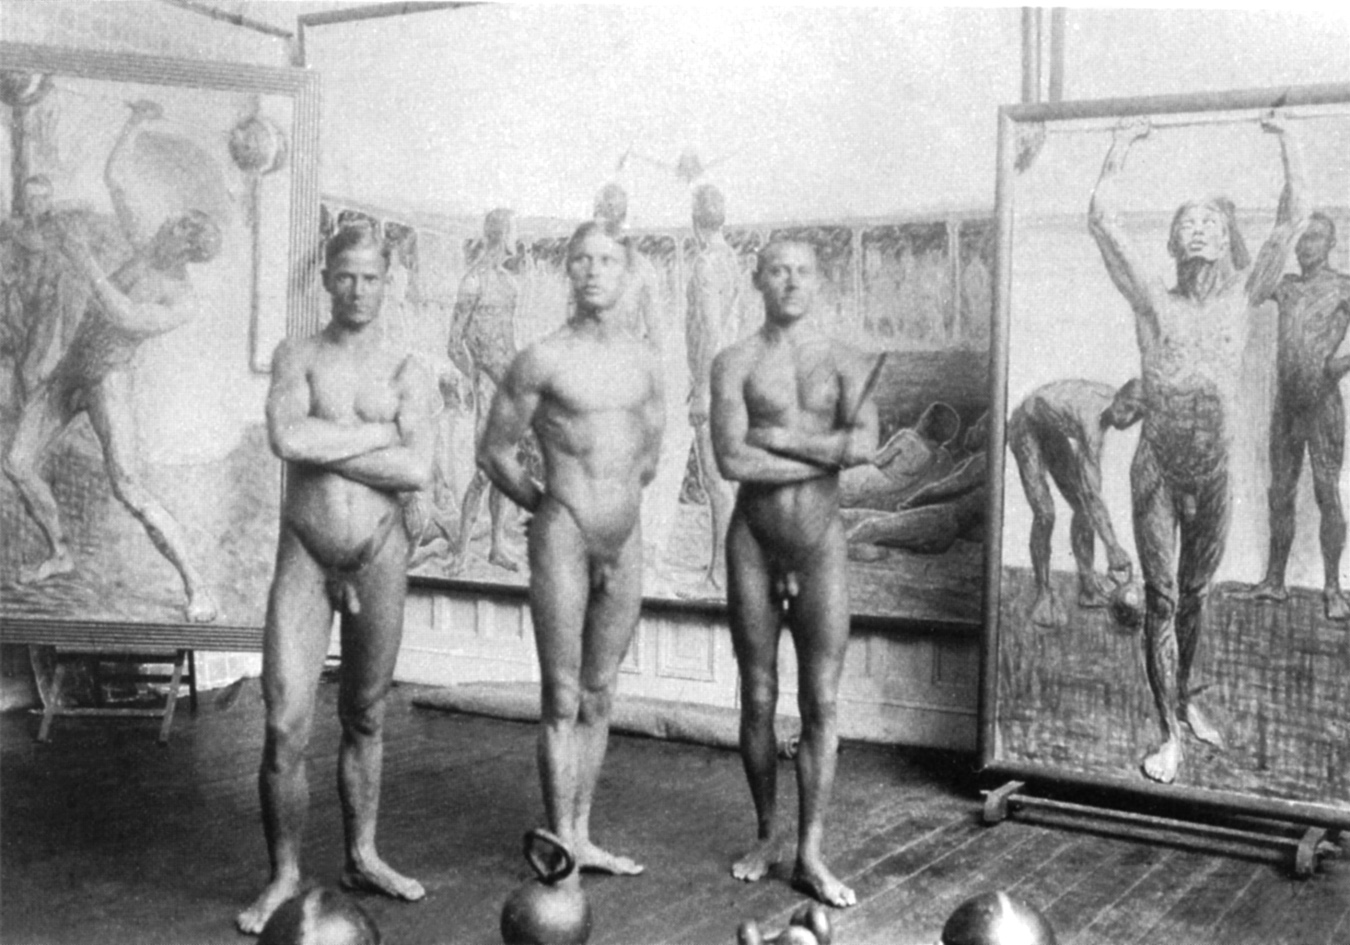 Tre atleti in posa nell'atelier di Eugène Jansson (1911 ca)